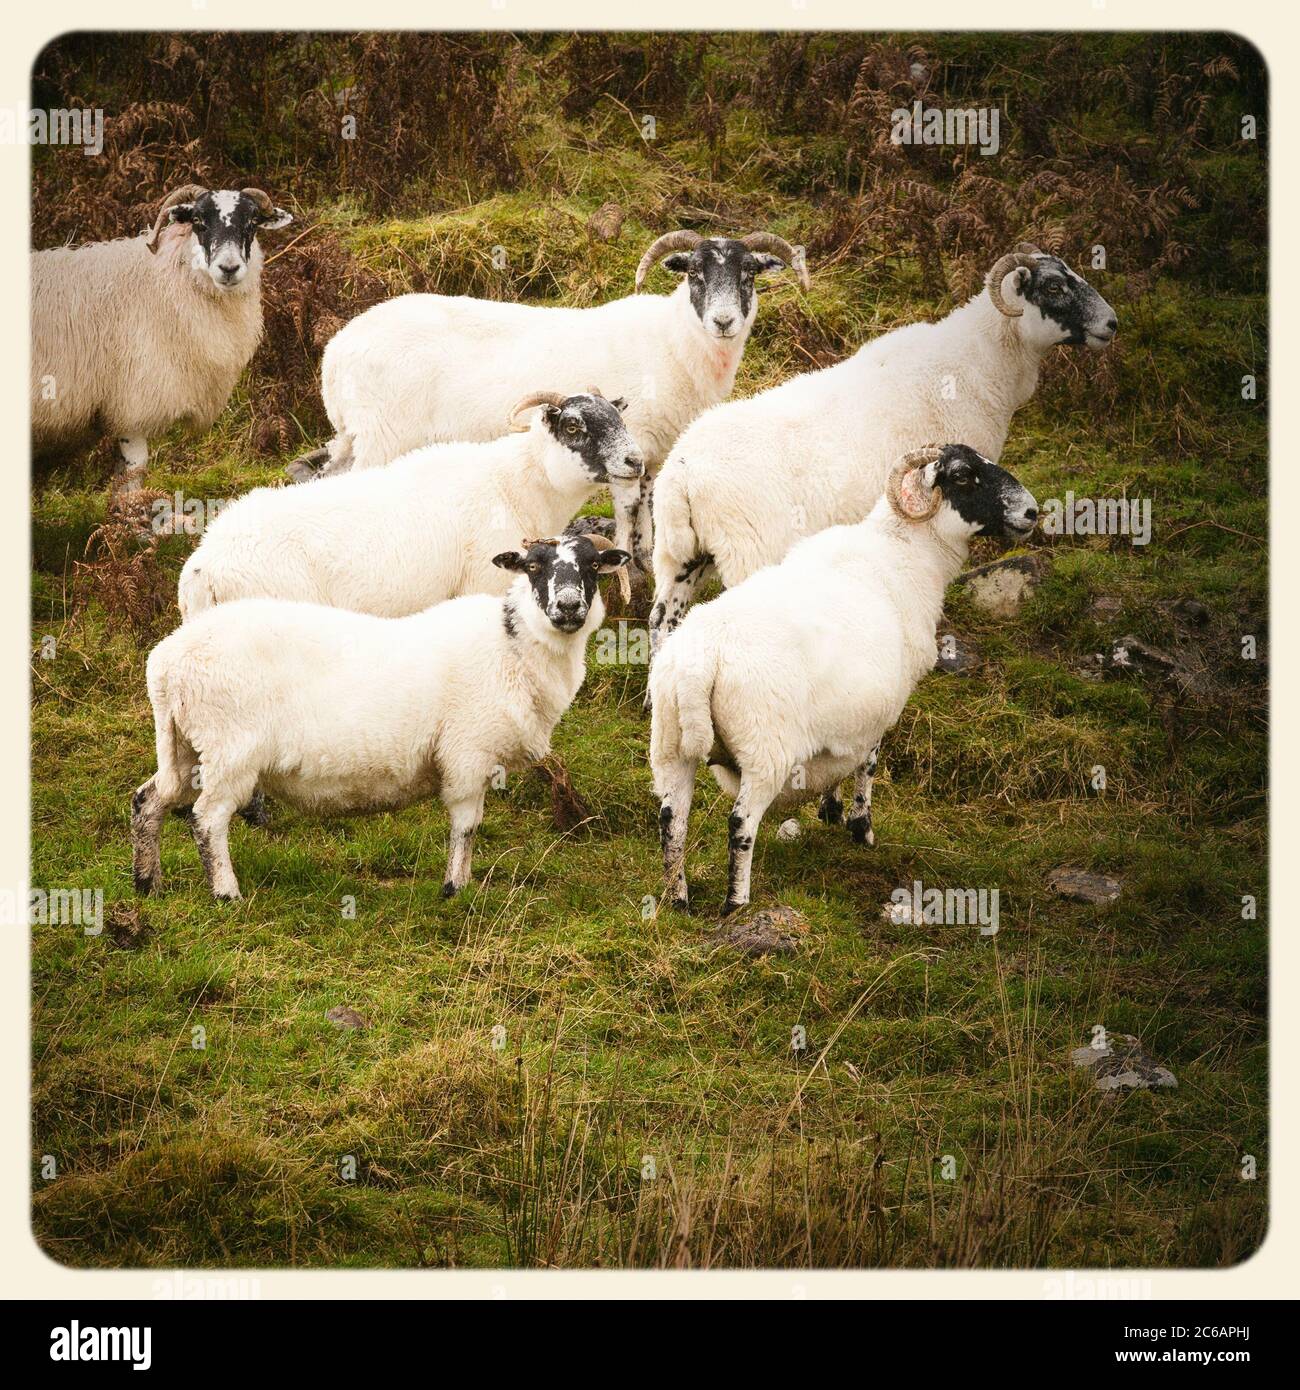 Schwarz gesichtige Schafe in den schottischen Highlands. Gefiltert, um wie ein veraltertes Sofortfoto zu aussehen. Stockfoto